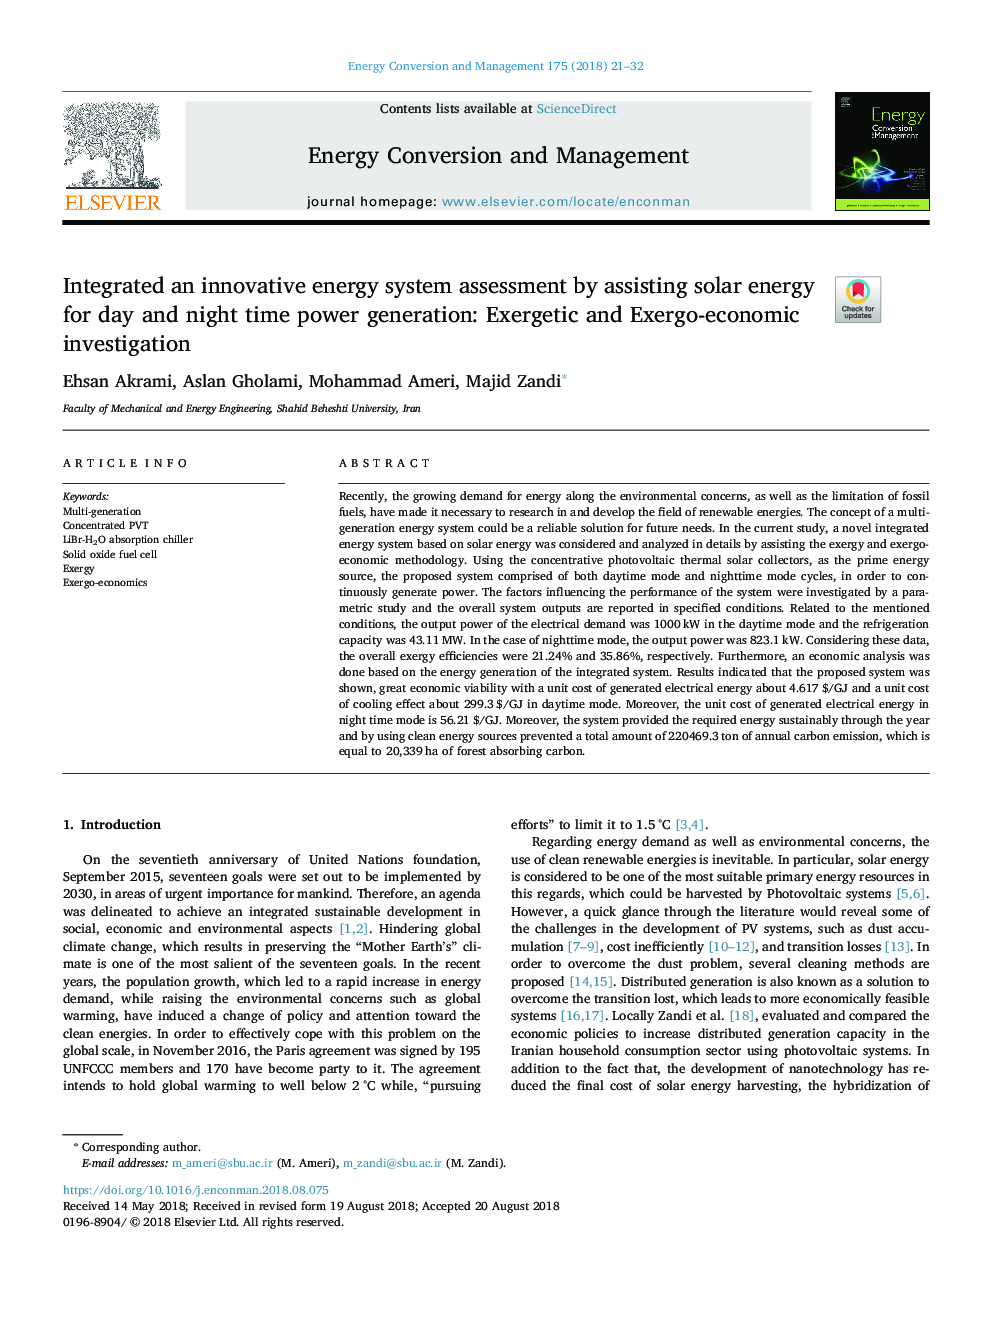 یکپارچه ارزیابی سیستم انرژی نوآورانه با کمک انرژی خورشیدی برای تولید برق روزانه و شبانه: تحقیقات گسترده ای و اگزرژی اقتصادی